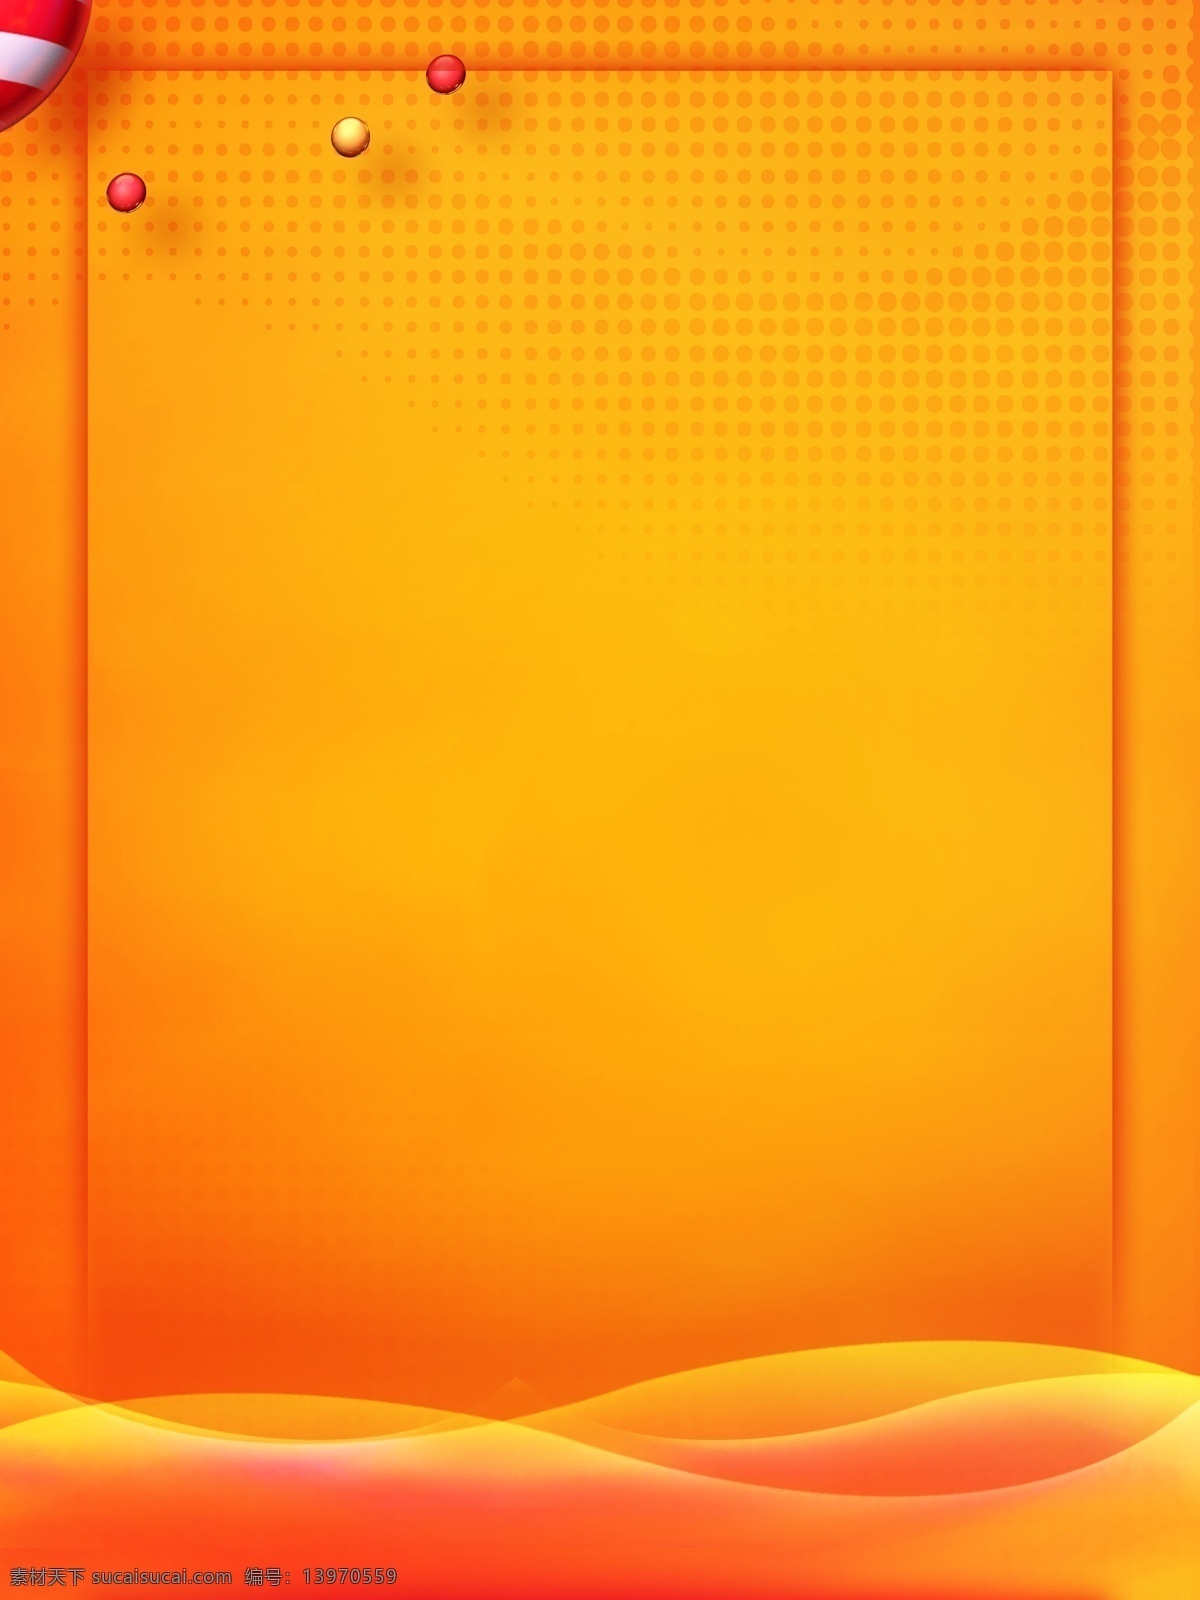 橙色 点阵 优惠 促销 背景 底图 海报背景 活力 电商背景 电商素材 淘宝素材 优惠促销背景 分层